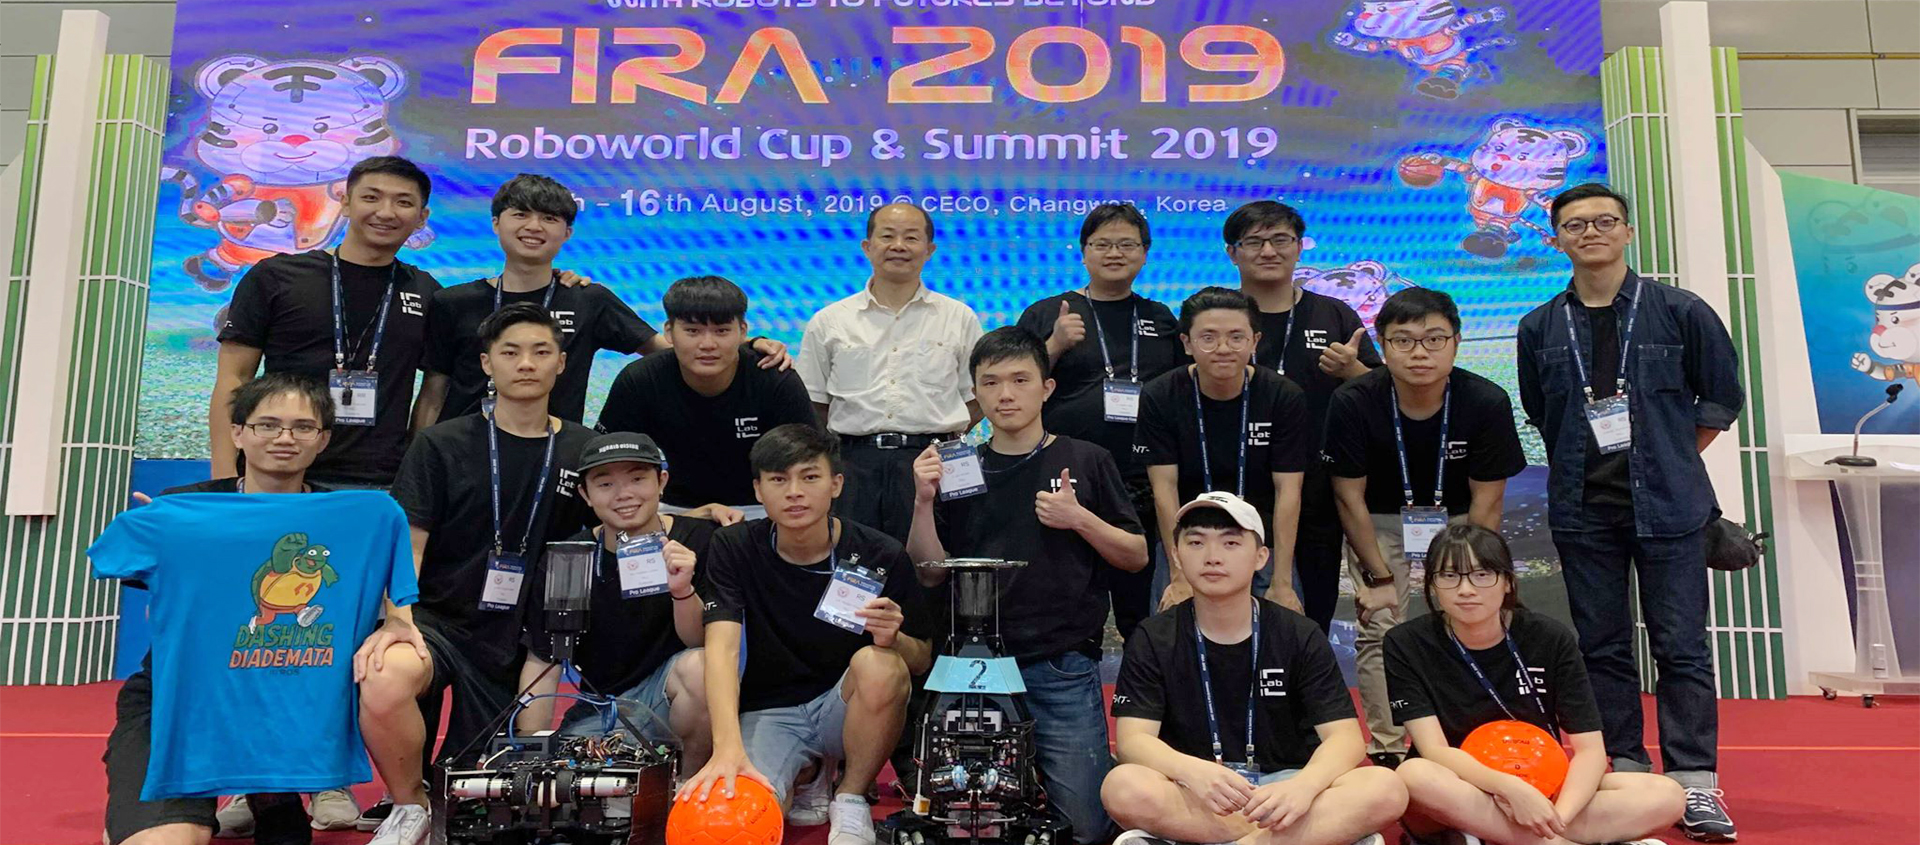 FIRA世界盃機器人比賽 2019, Korea